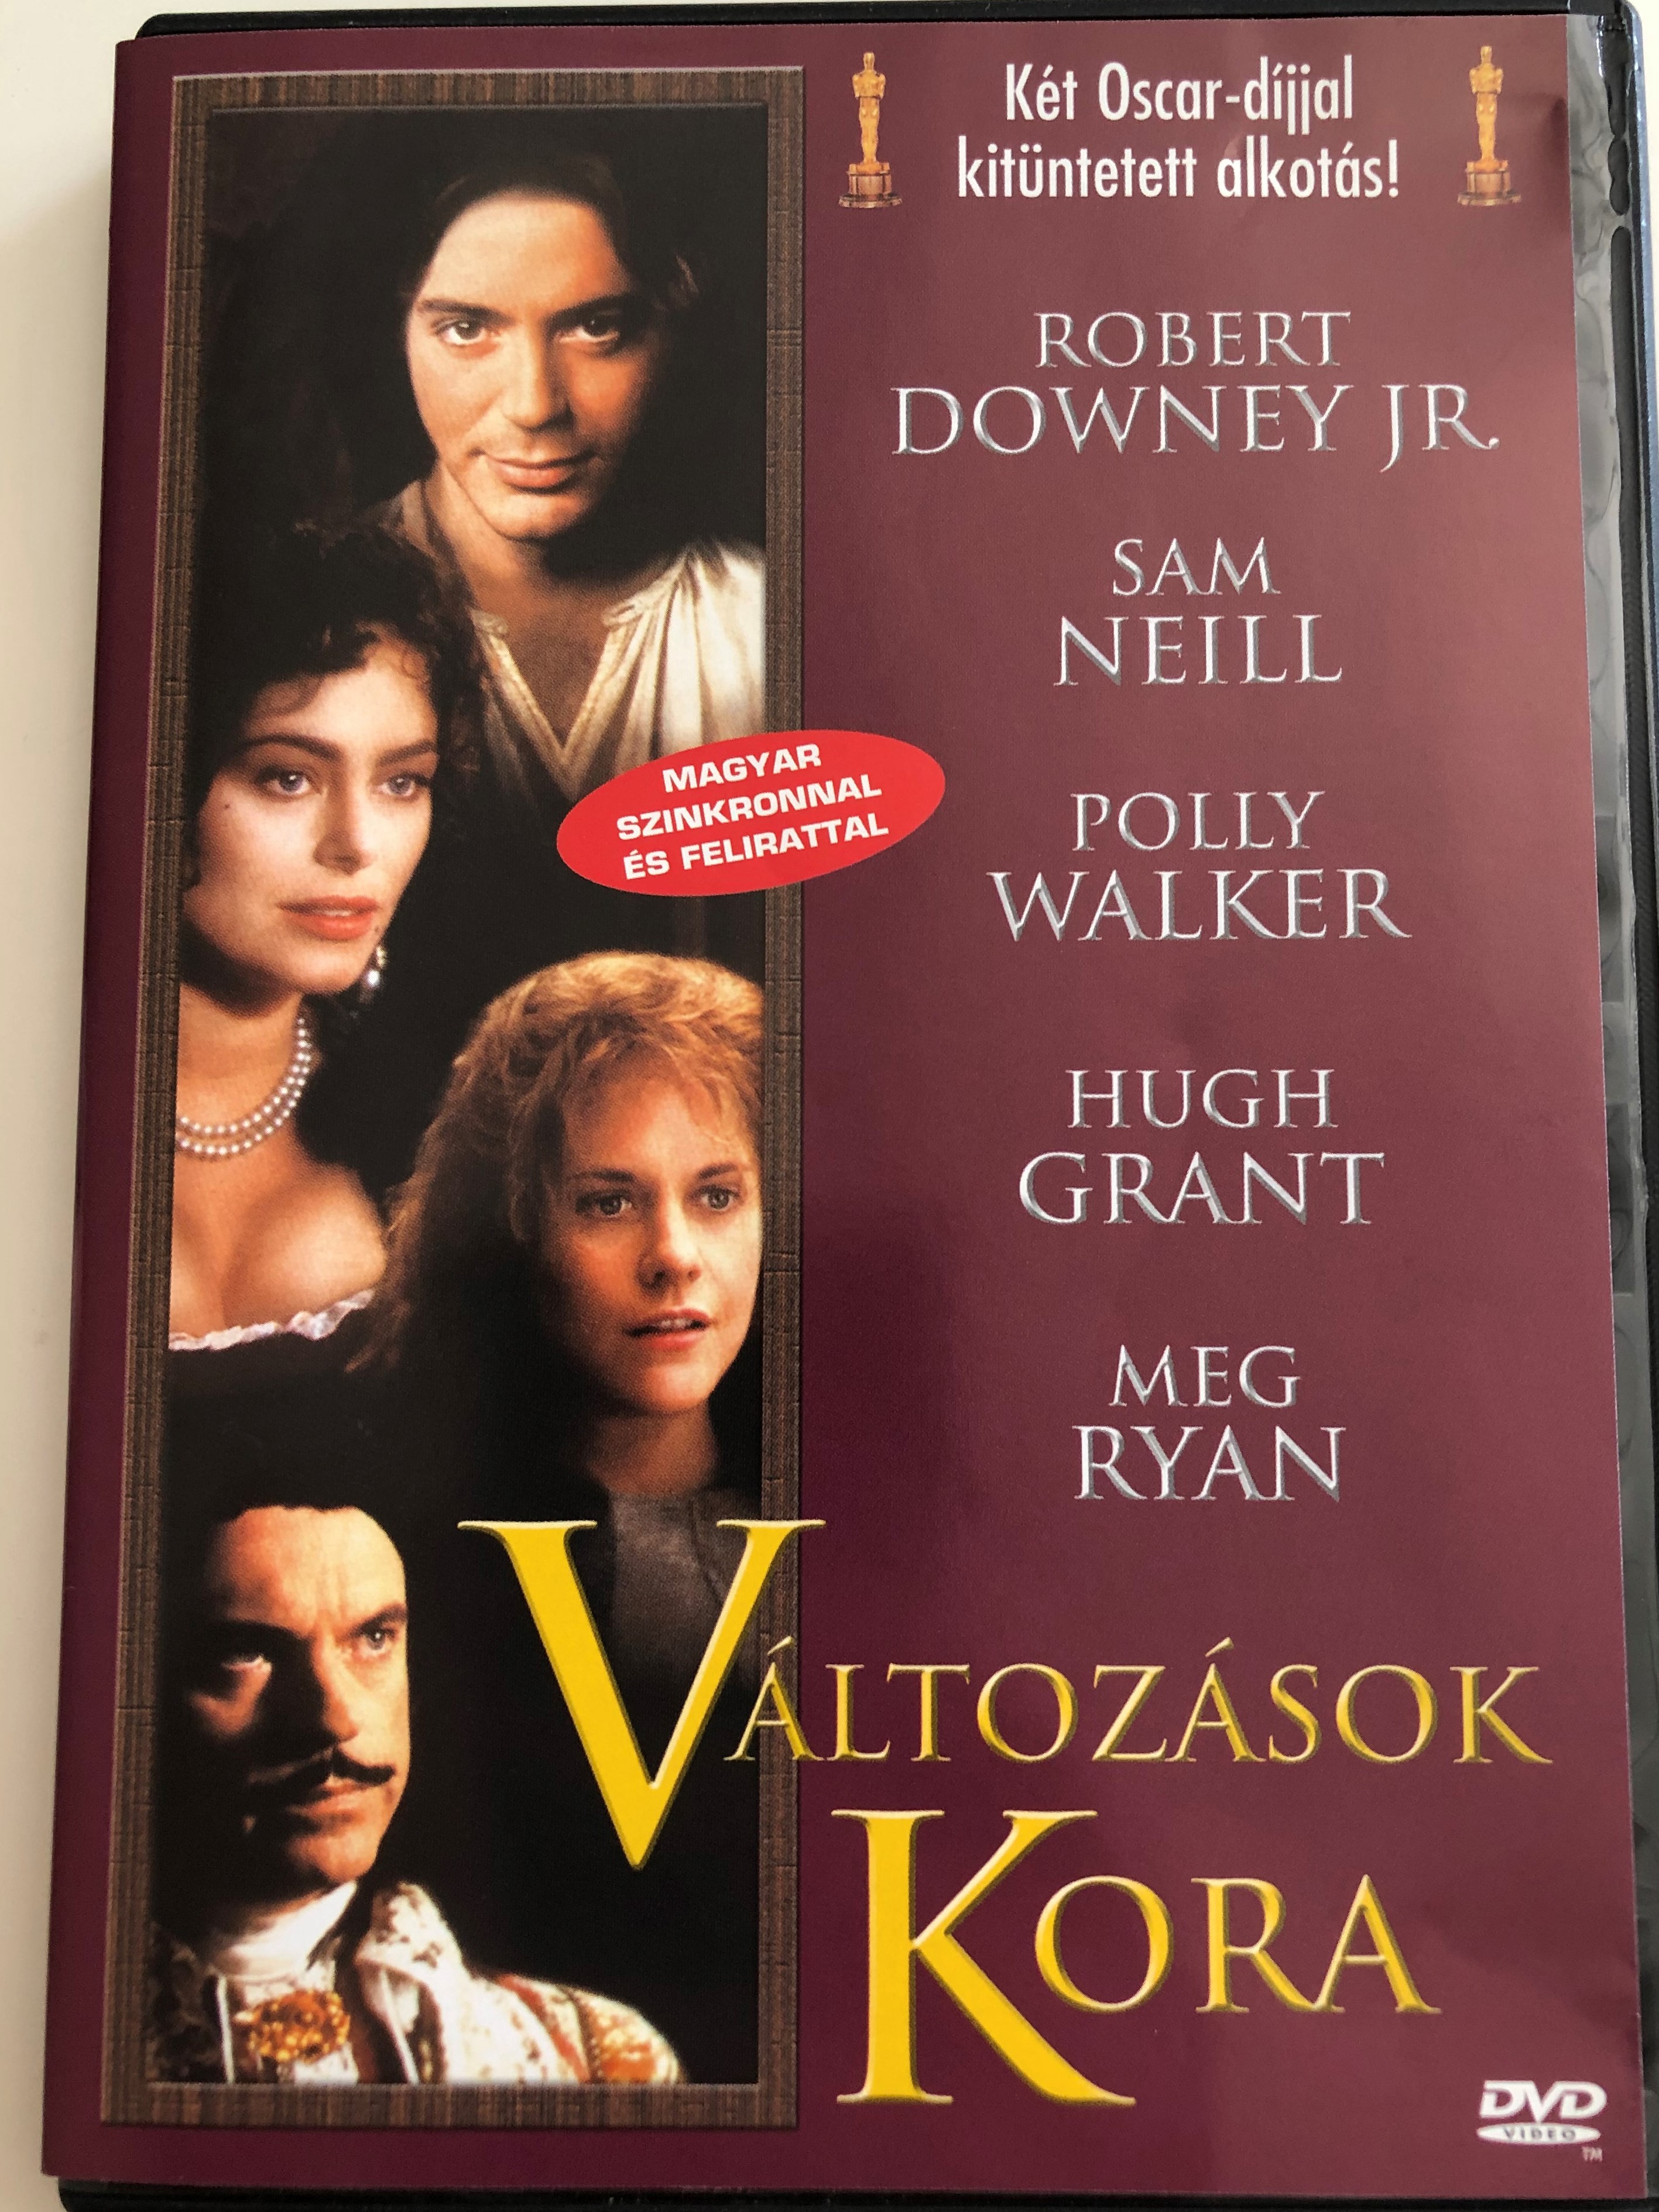 restoration-dvd-1995-v-ltoz-sok-kora-directed-by-michael-hoffman-starring-robert-downey-jr.-sam-neill-meg-ryan-david-thewlis-polly-walker-ian-mckellen-hugh-grant-1-.jpg